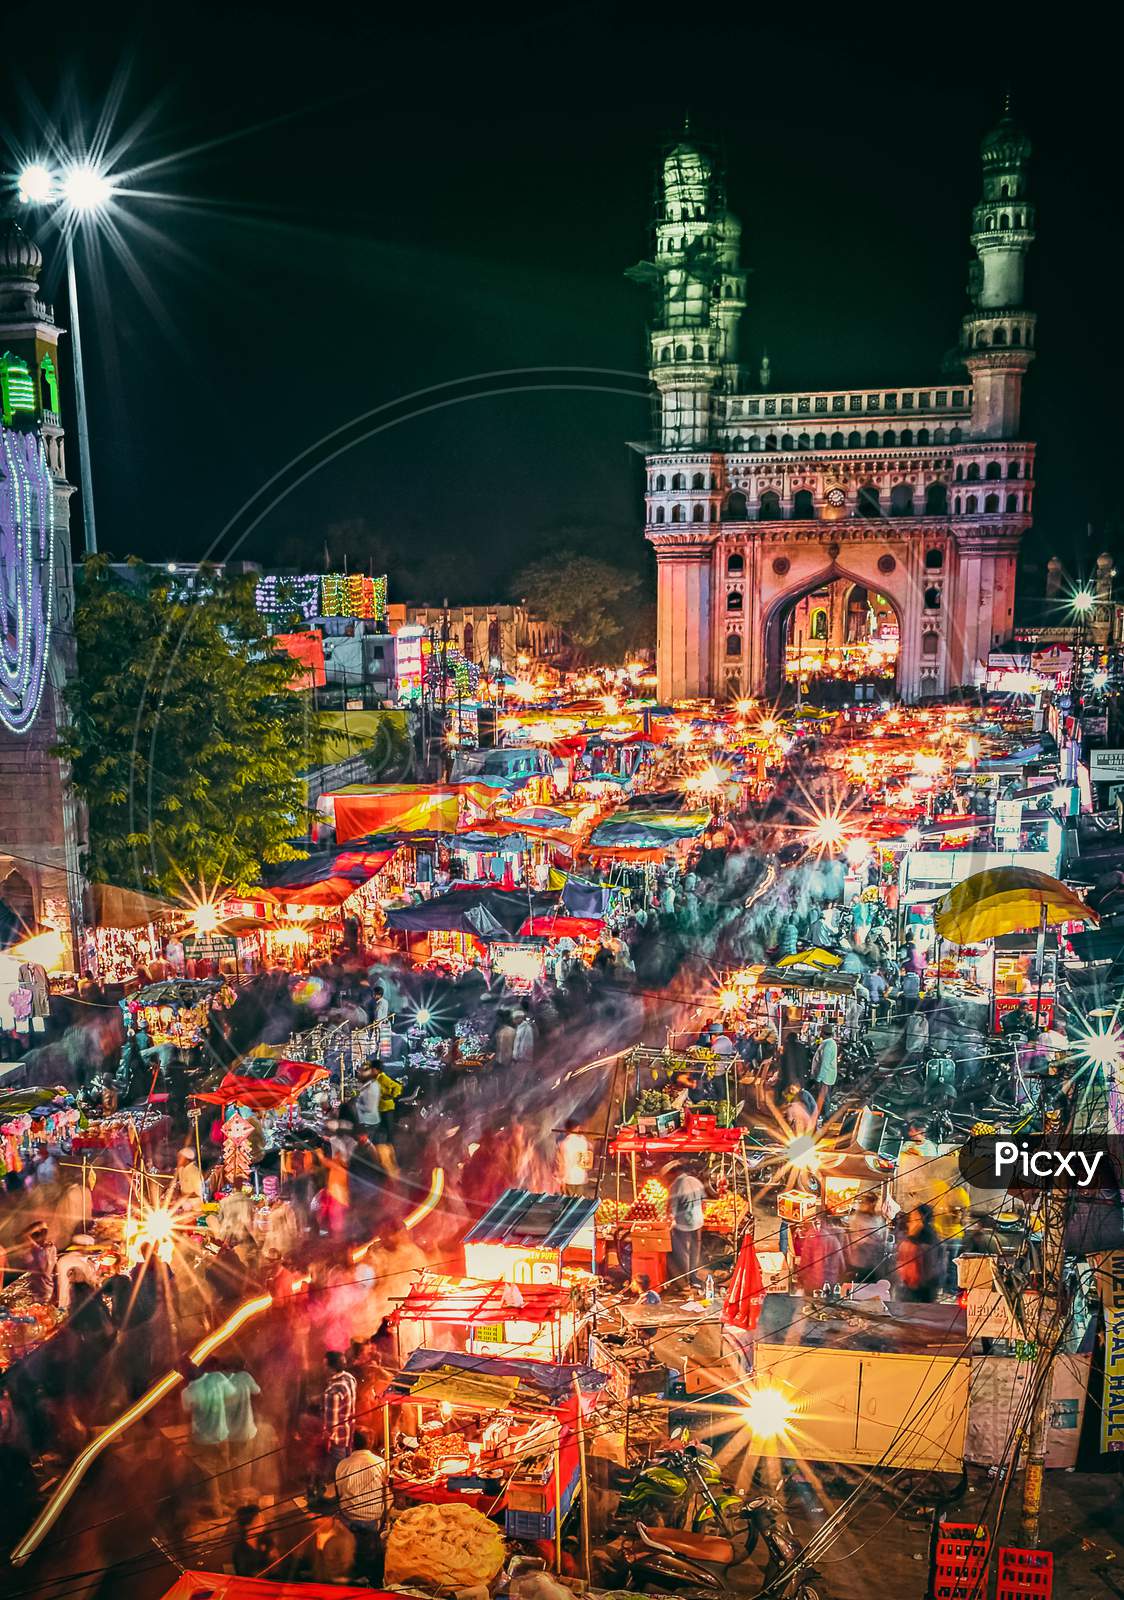 Market in Charminar During Ramzan Season